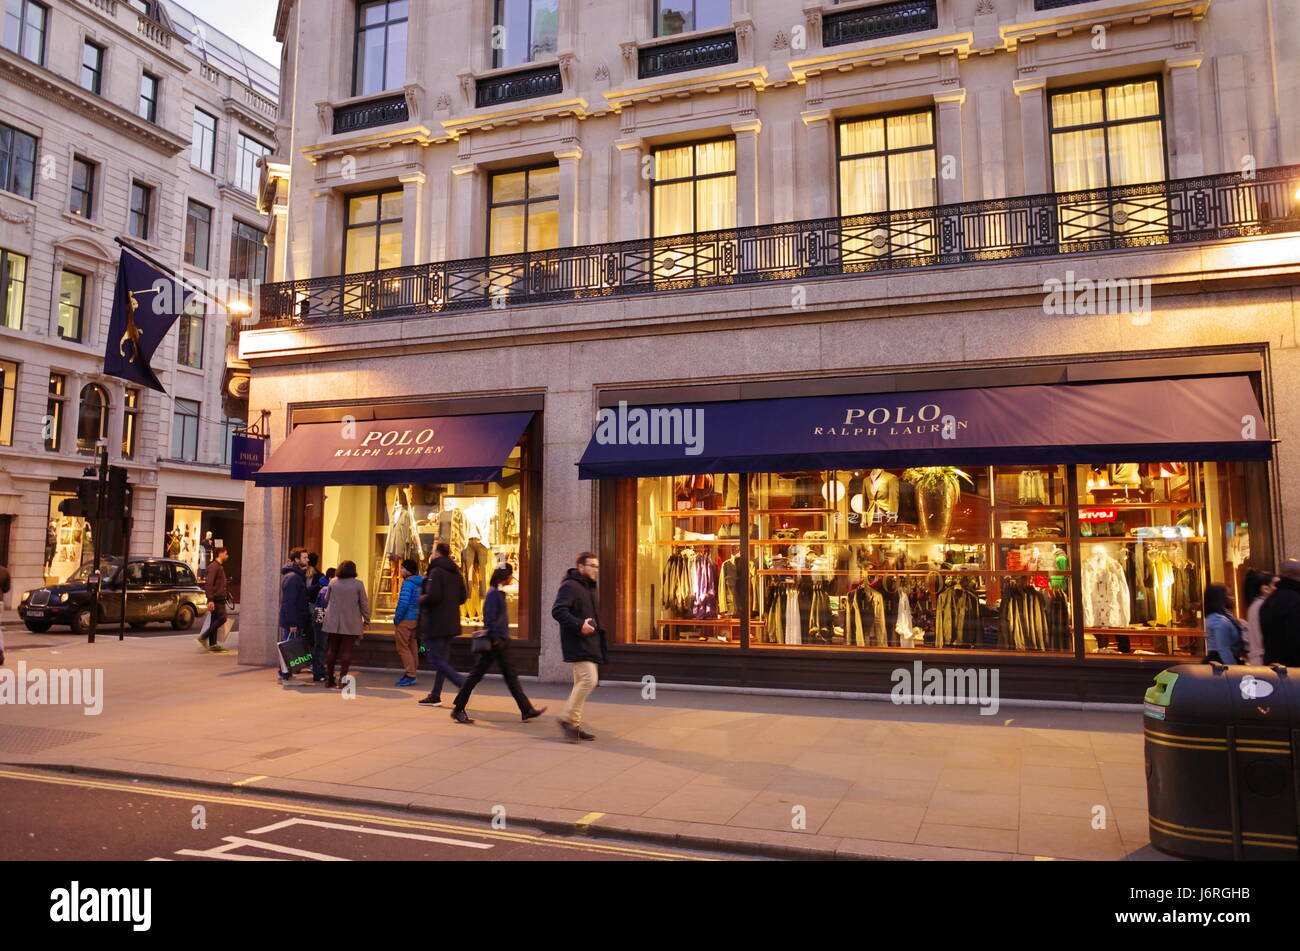 POLO Ralph Lauren designer clothing store on Bond Street, London, UK ...